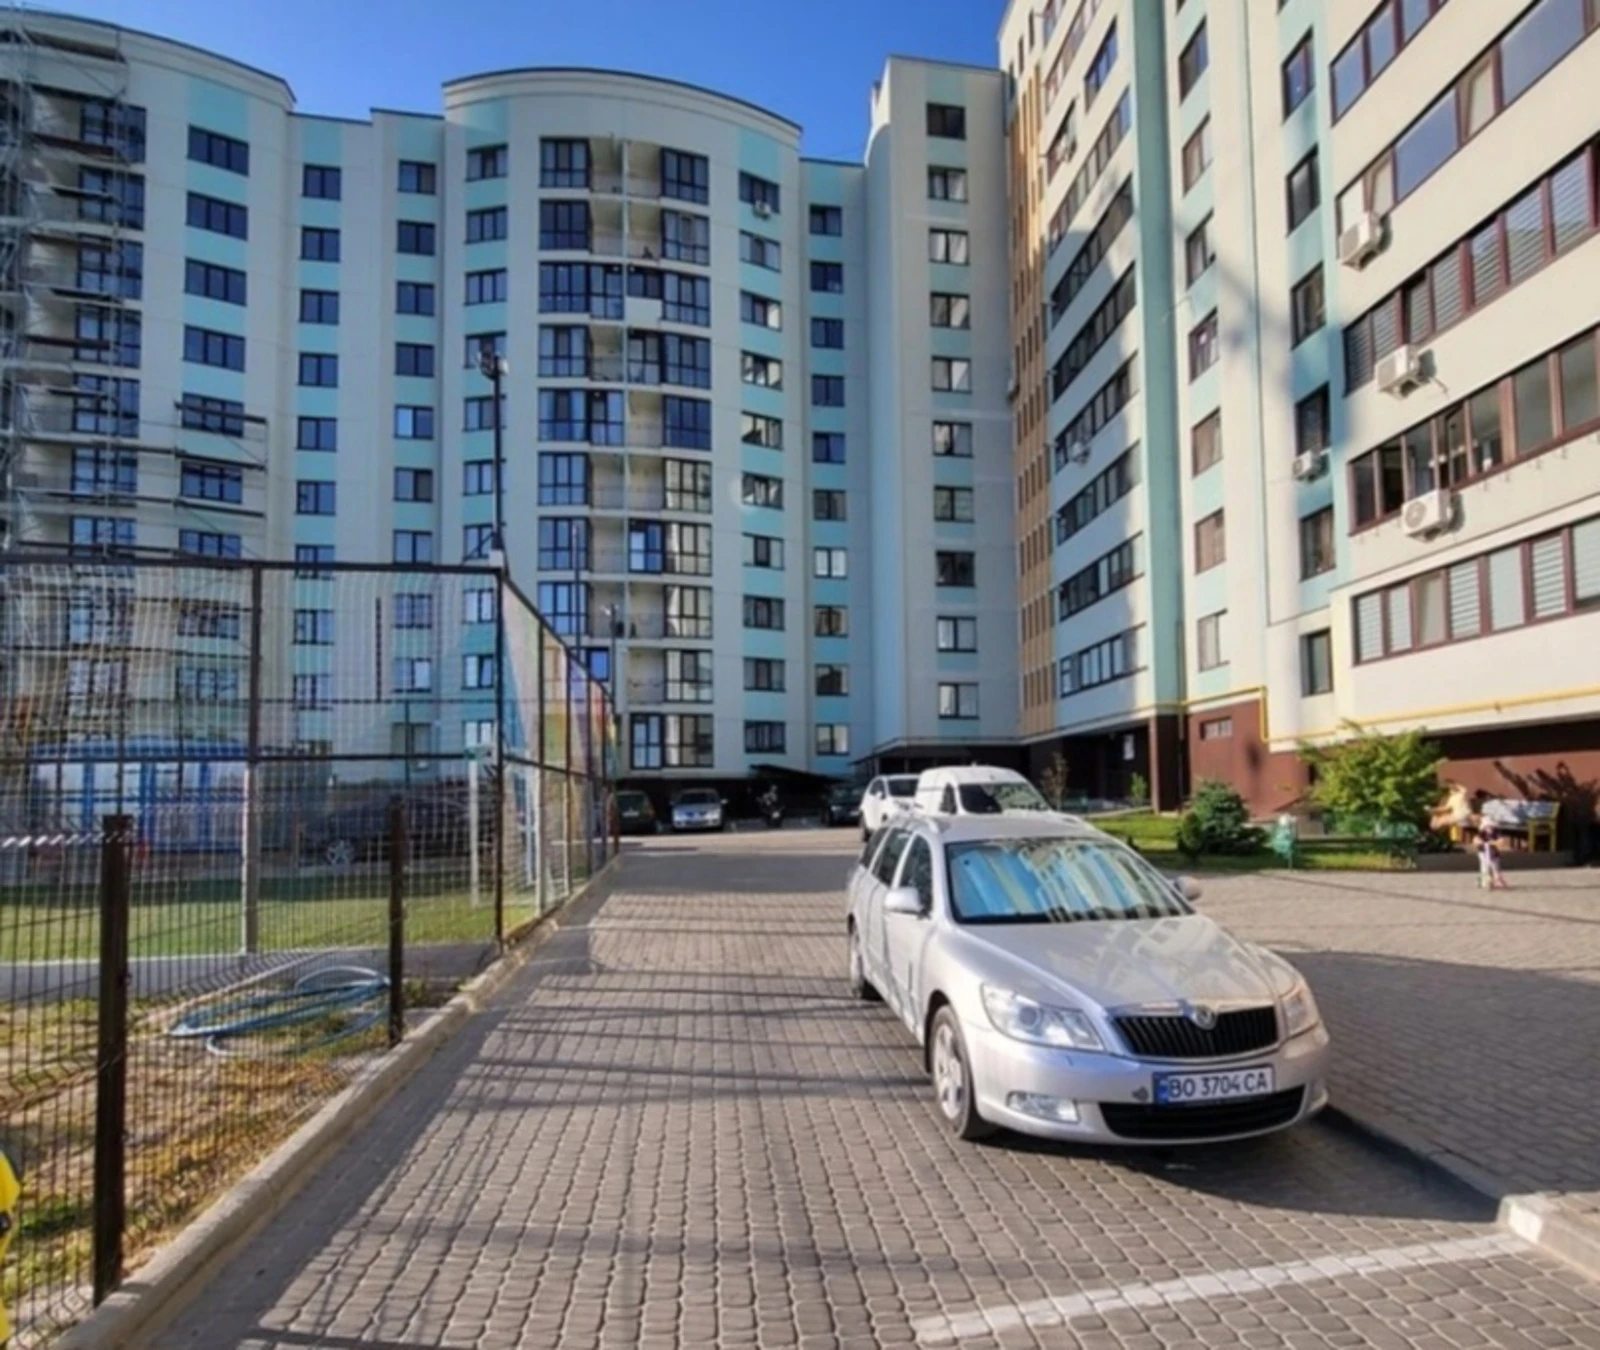 Продаж квартири. 1 room, 47 m², 2nd floor/10 floors. Кутковцы, Тернопіль. 